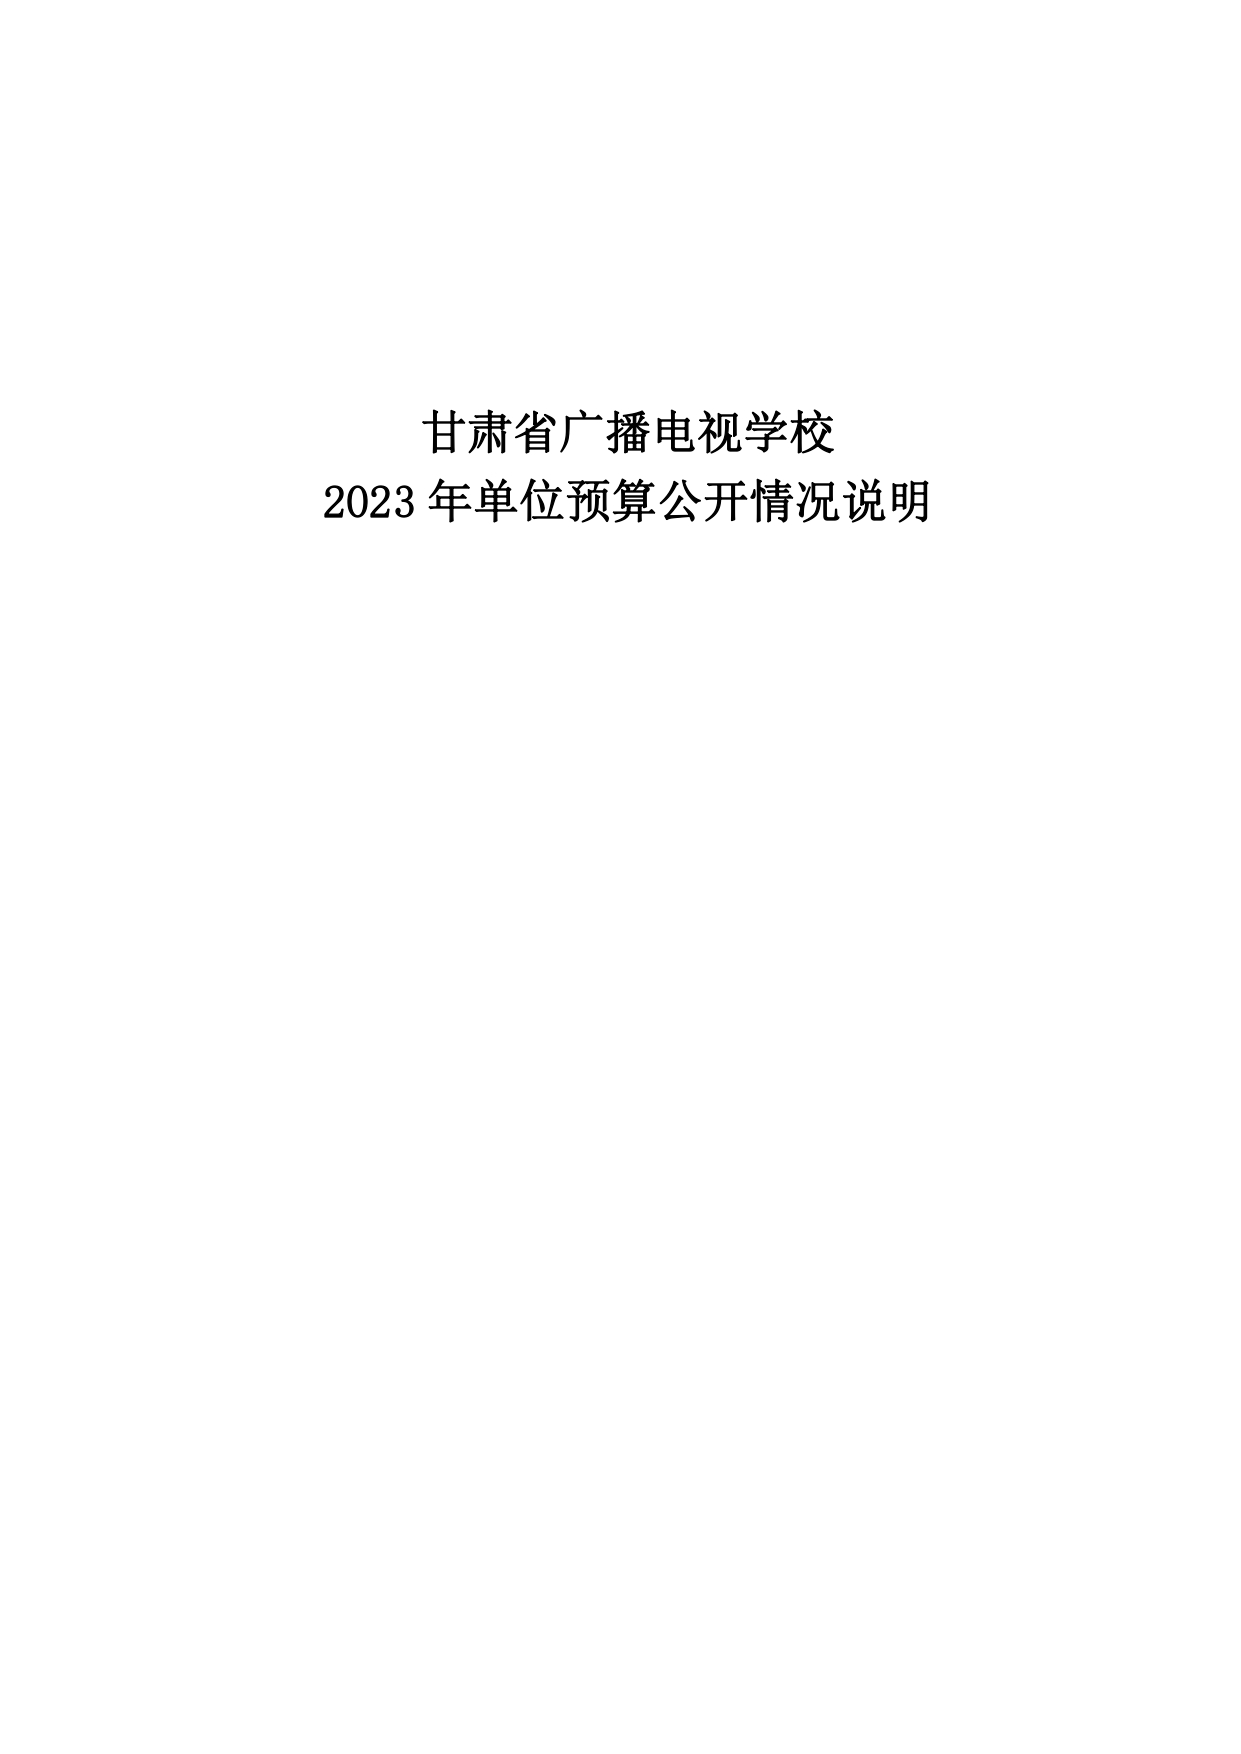 甘肃省广播电视学校2023年单位预算公开报告_page-0001.jpg